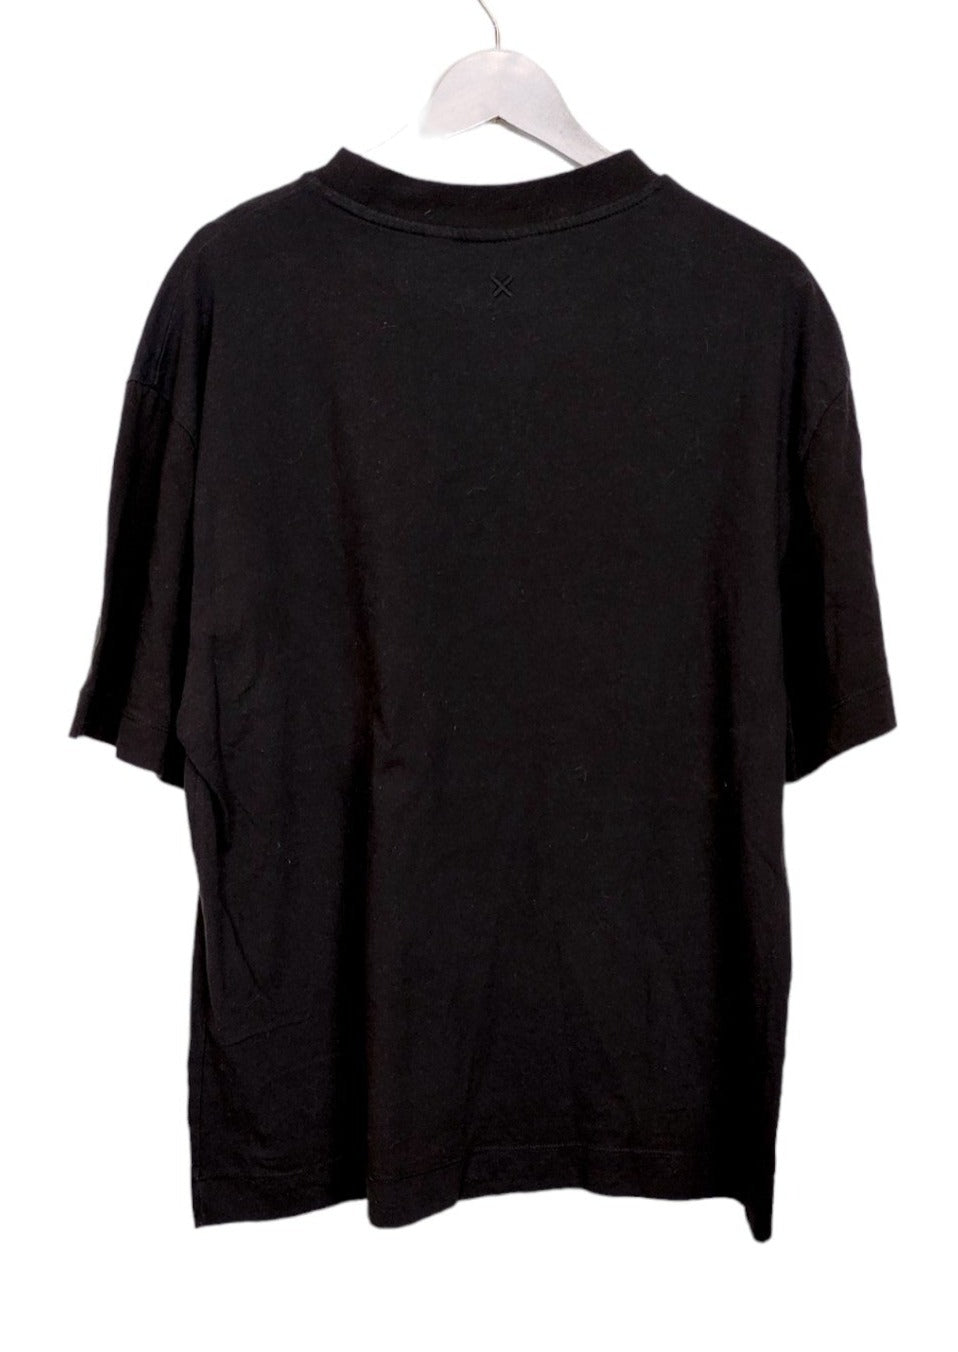 Ανδρική Μπλούζα - T- Shirt COLLUSION σε Μαύρο χρώμα (S/M)